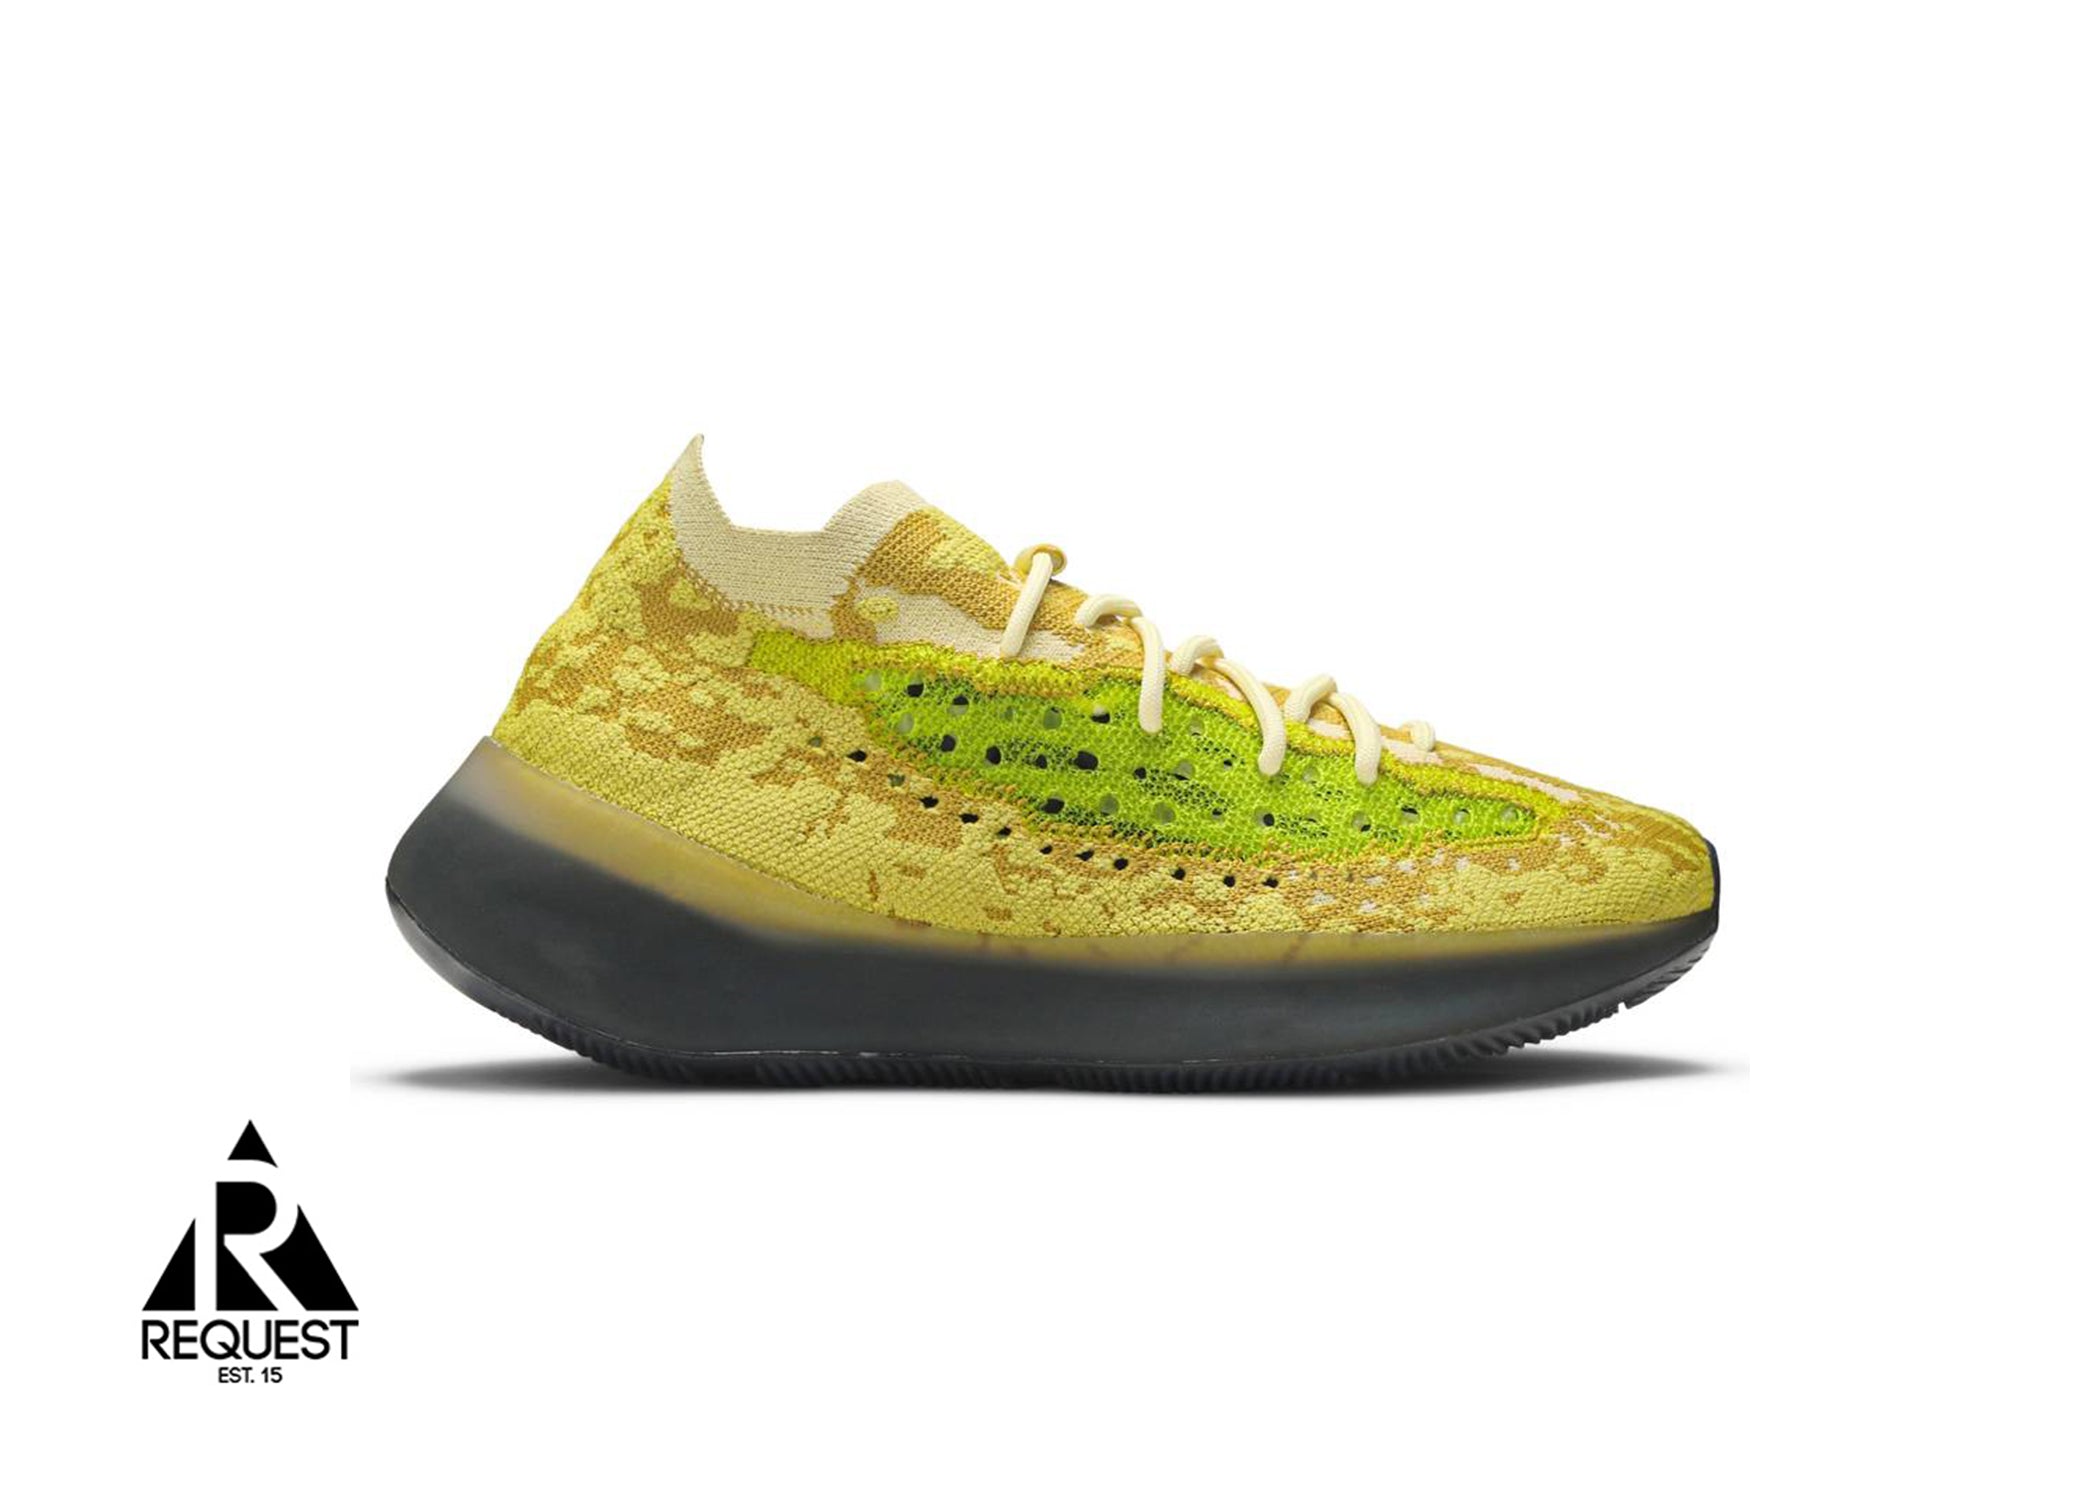 Adidas Yeezy Boost 380 “Hylte Glow”